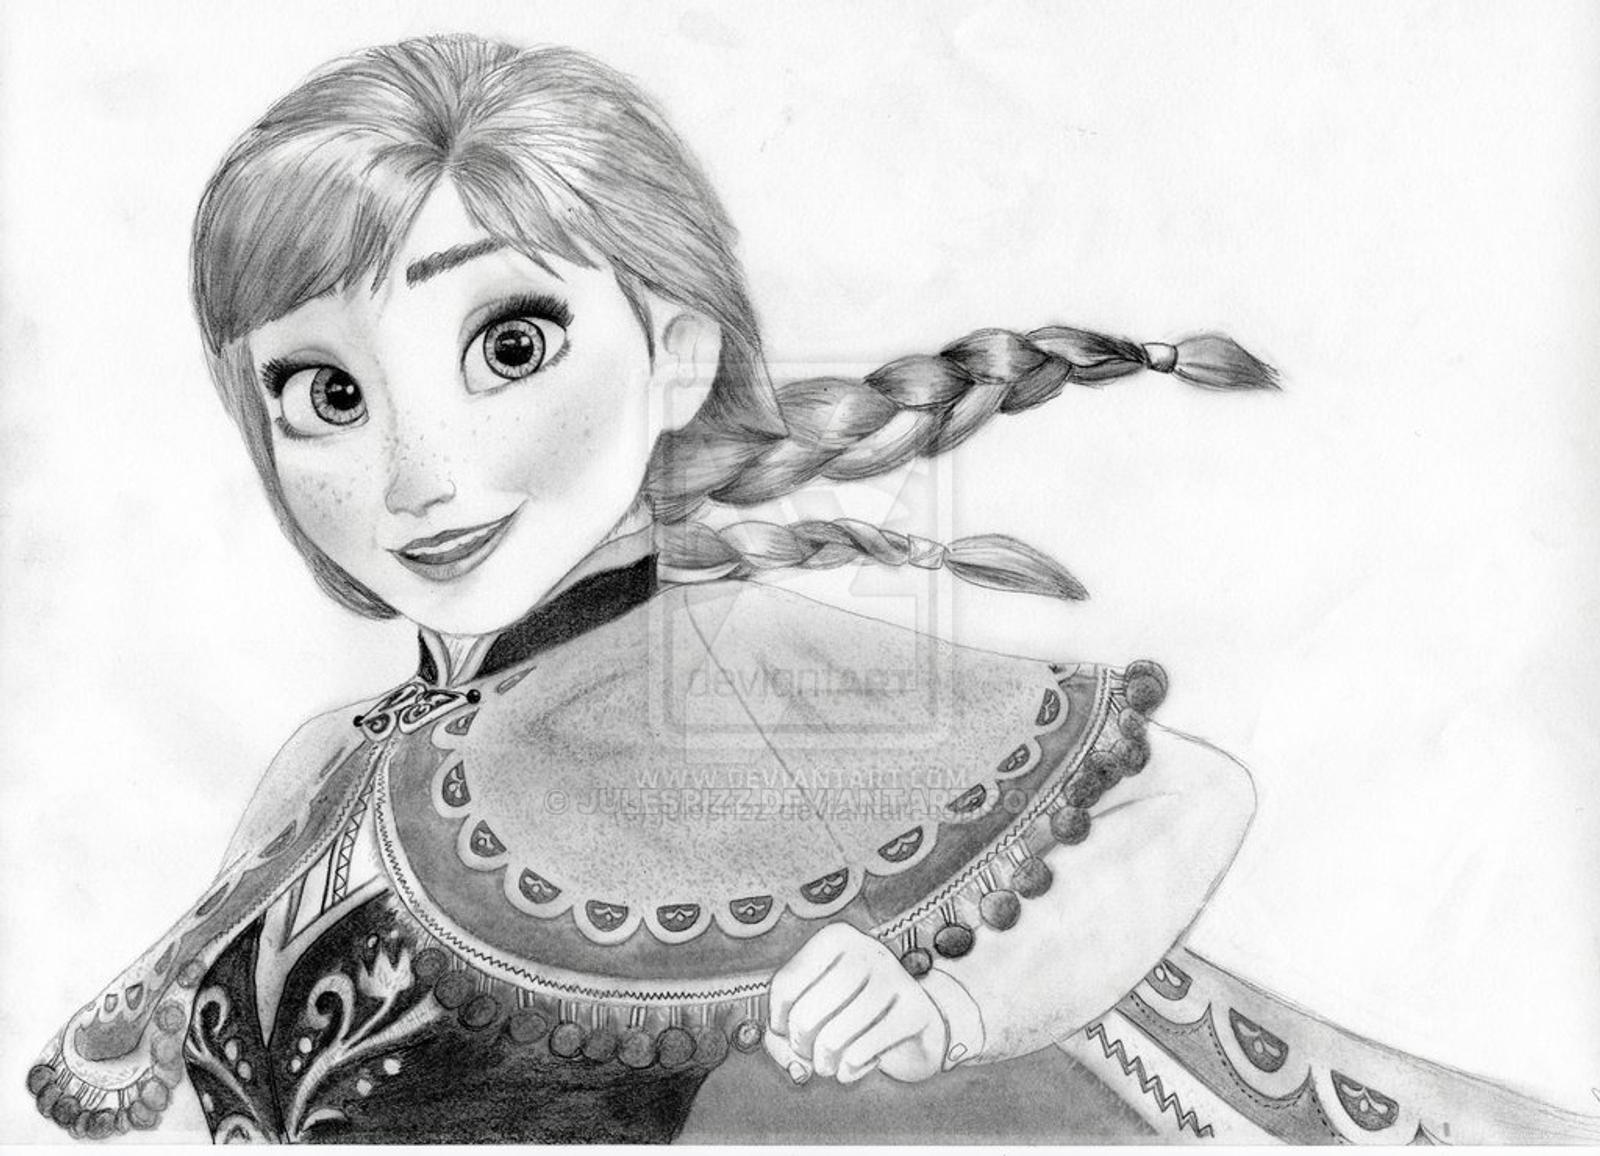 Anna from Disney's Frozen